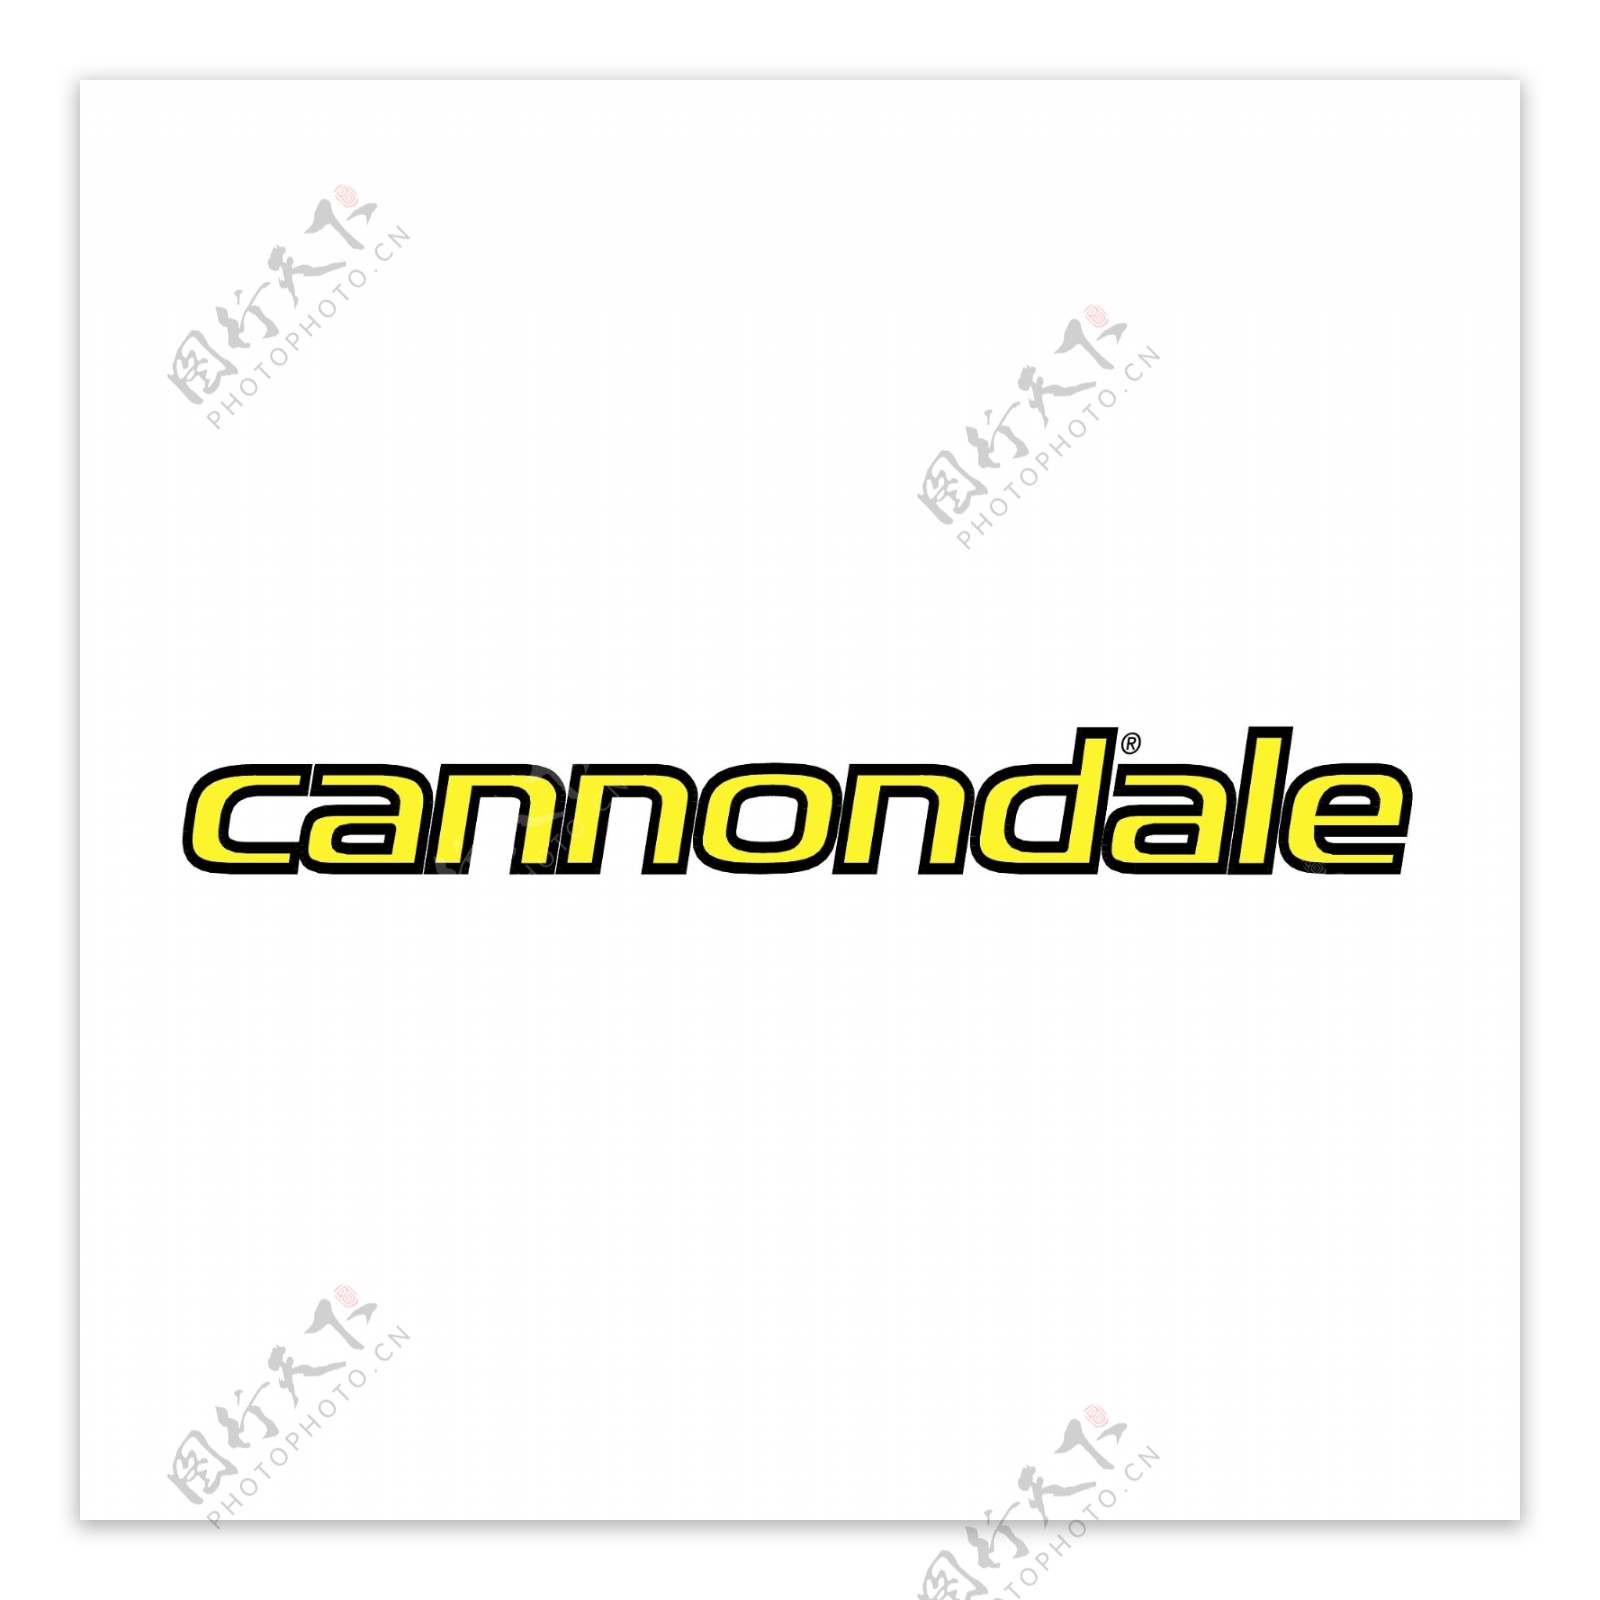 Cannondale1